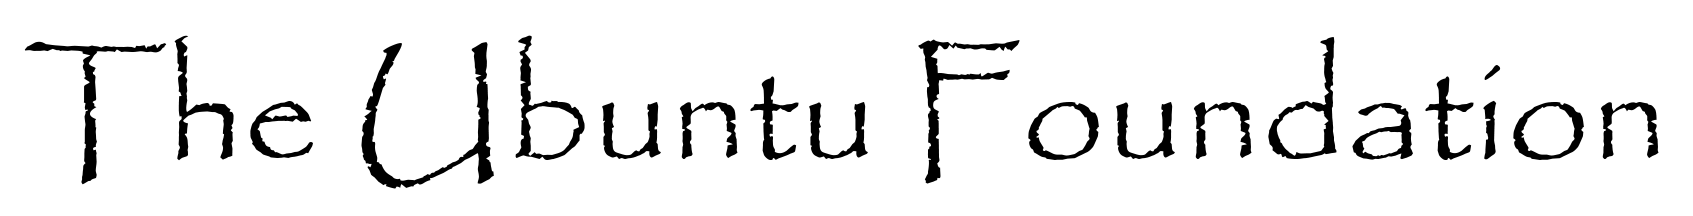 The Ubuntu Foundation logo